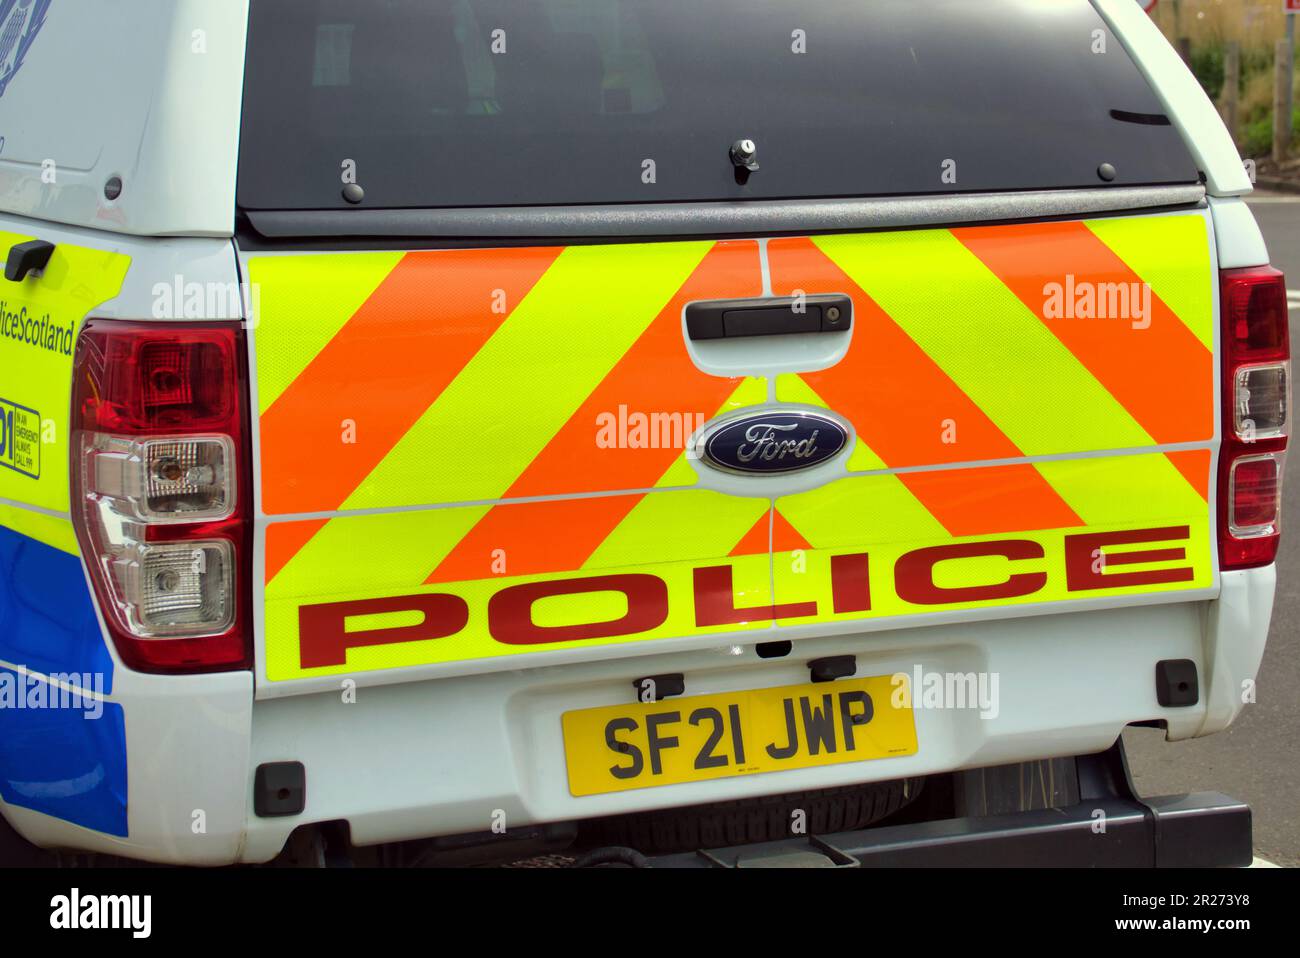 Police Scotland alba poleas van car Glasgow, Écosse, Royaume-Uni Banque D'Images